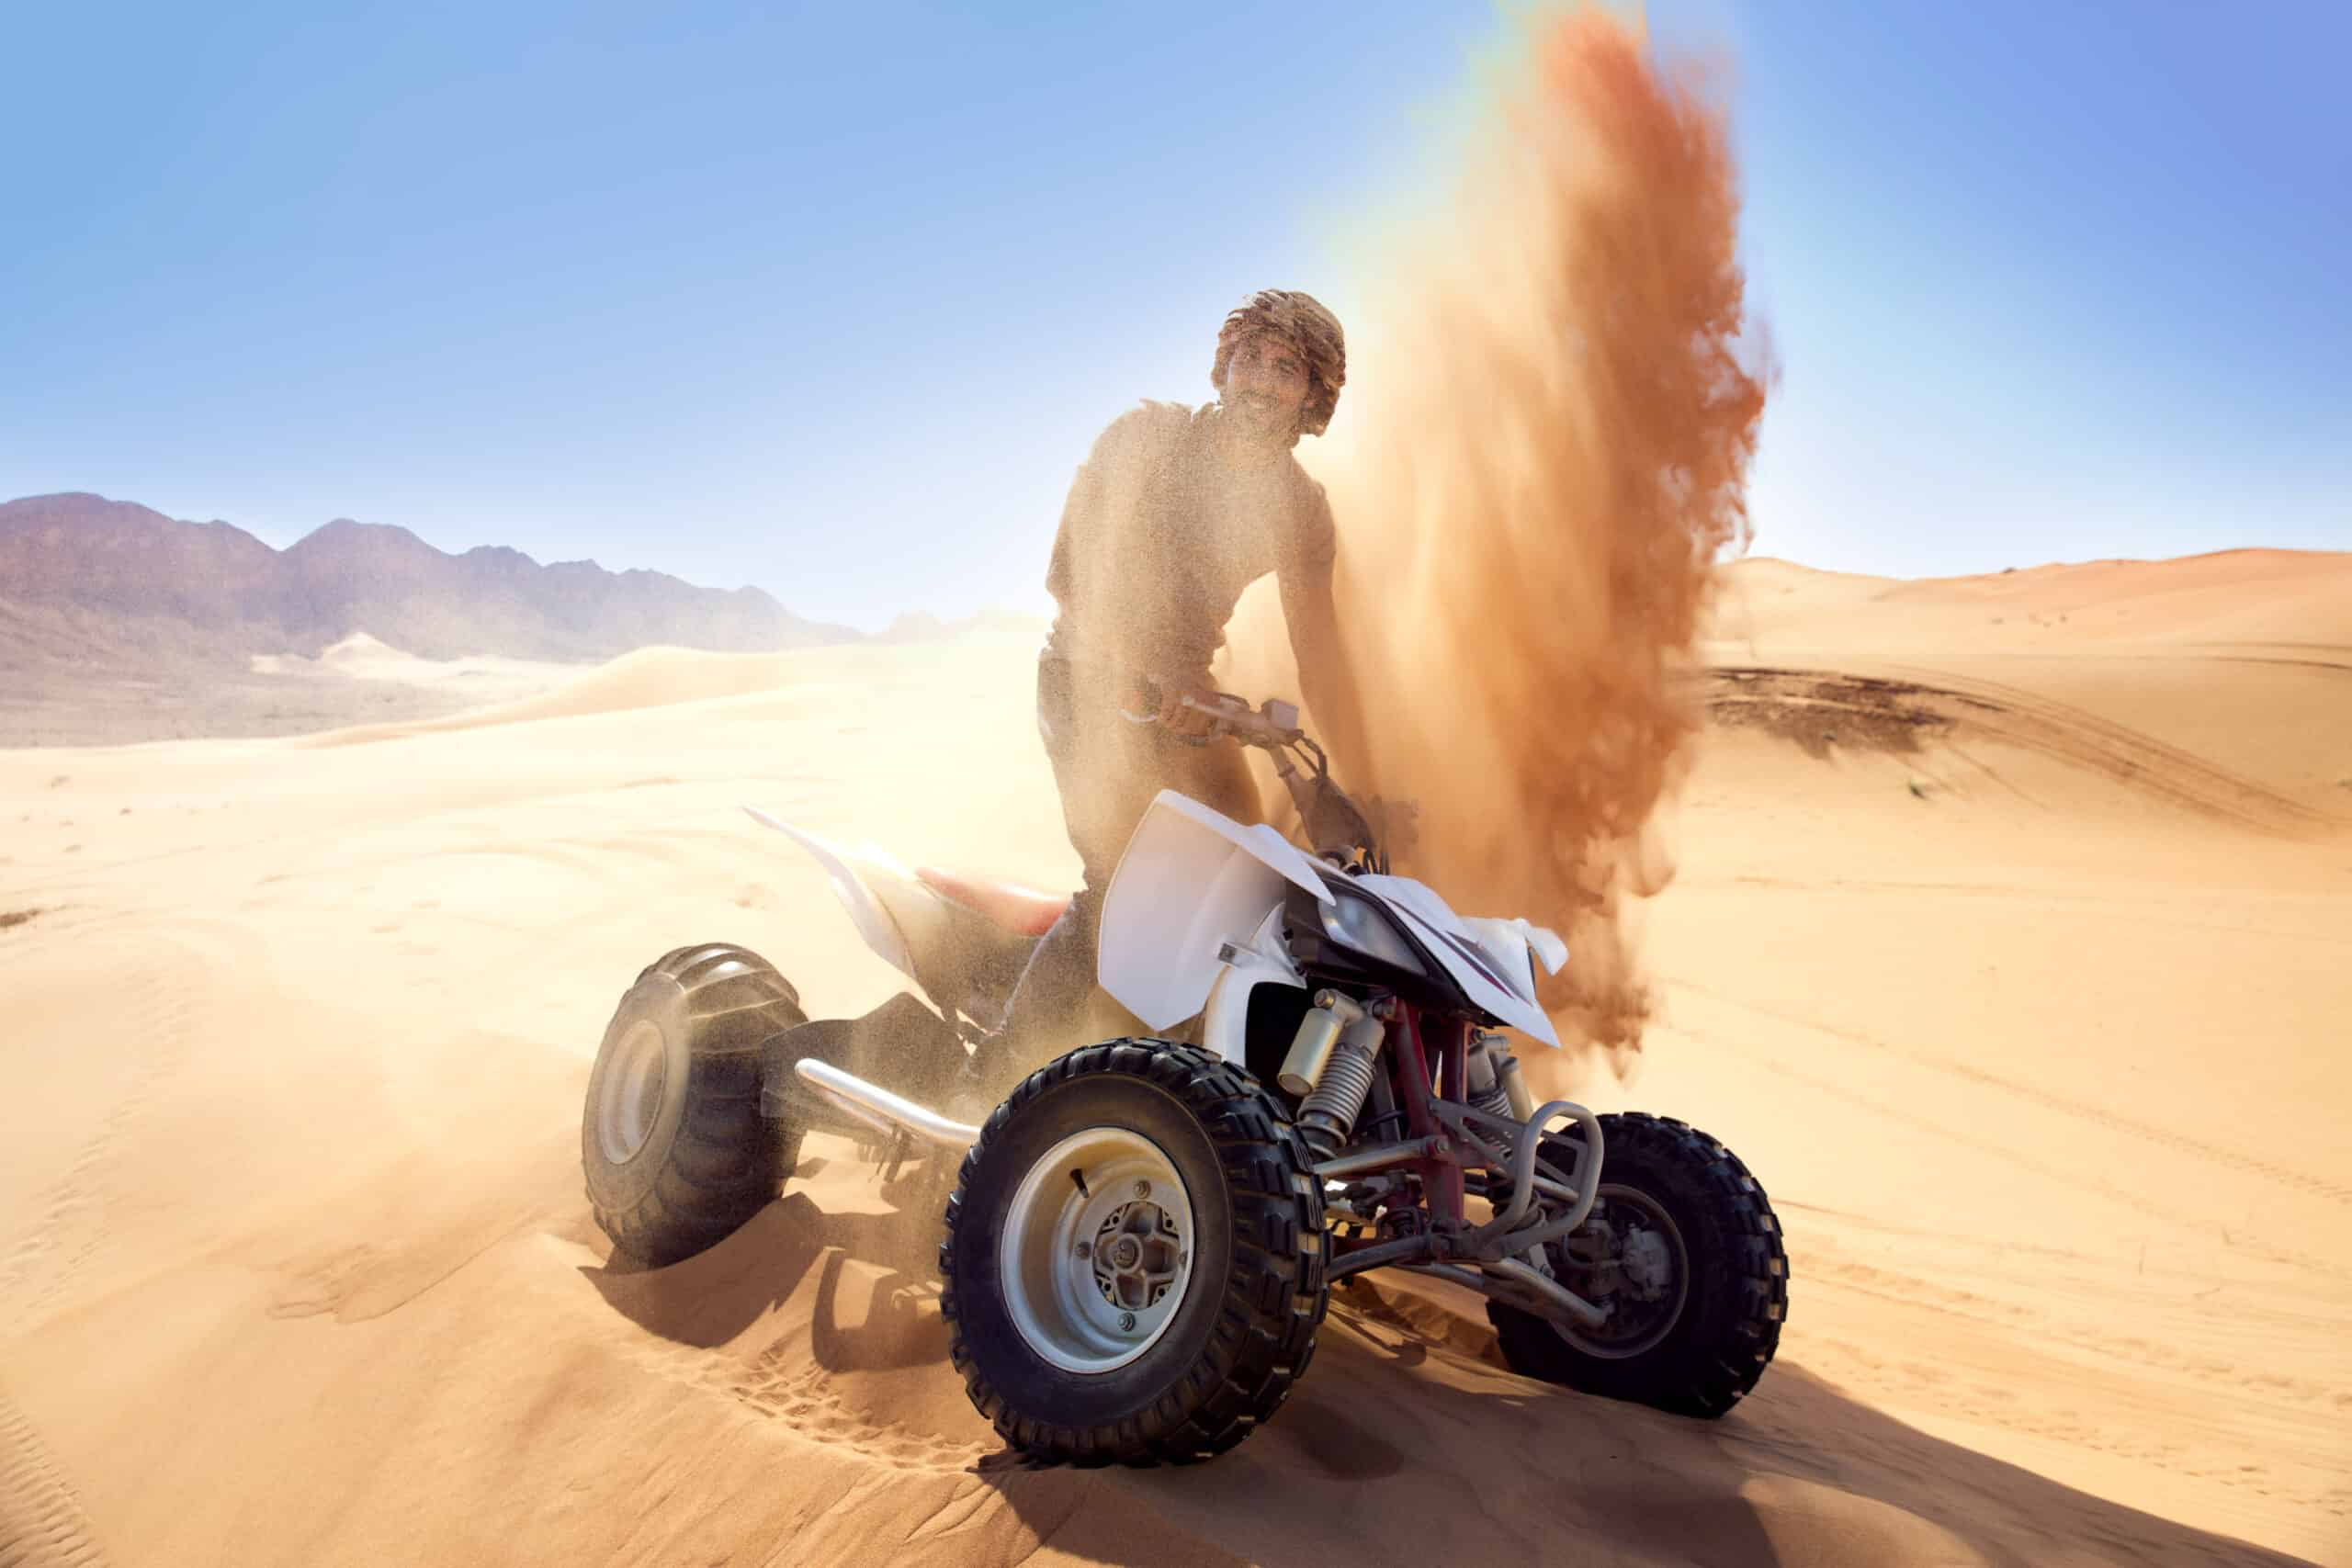 Eine Person fährt auf einem weißen Geländefahrzeug durch die Wüste und wirbelt unter einem klaren blauen Himmel eine Sandspur hinter sich auf. © Fotografie Tomas Rodriguez